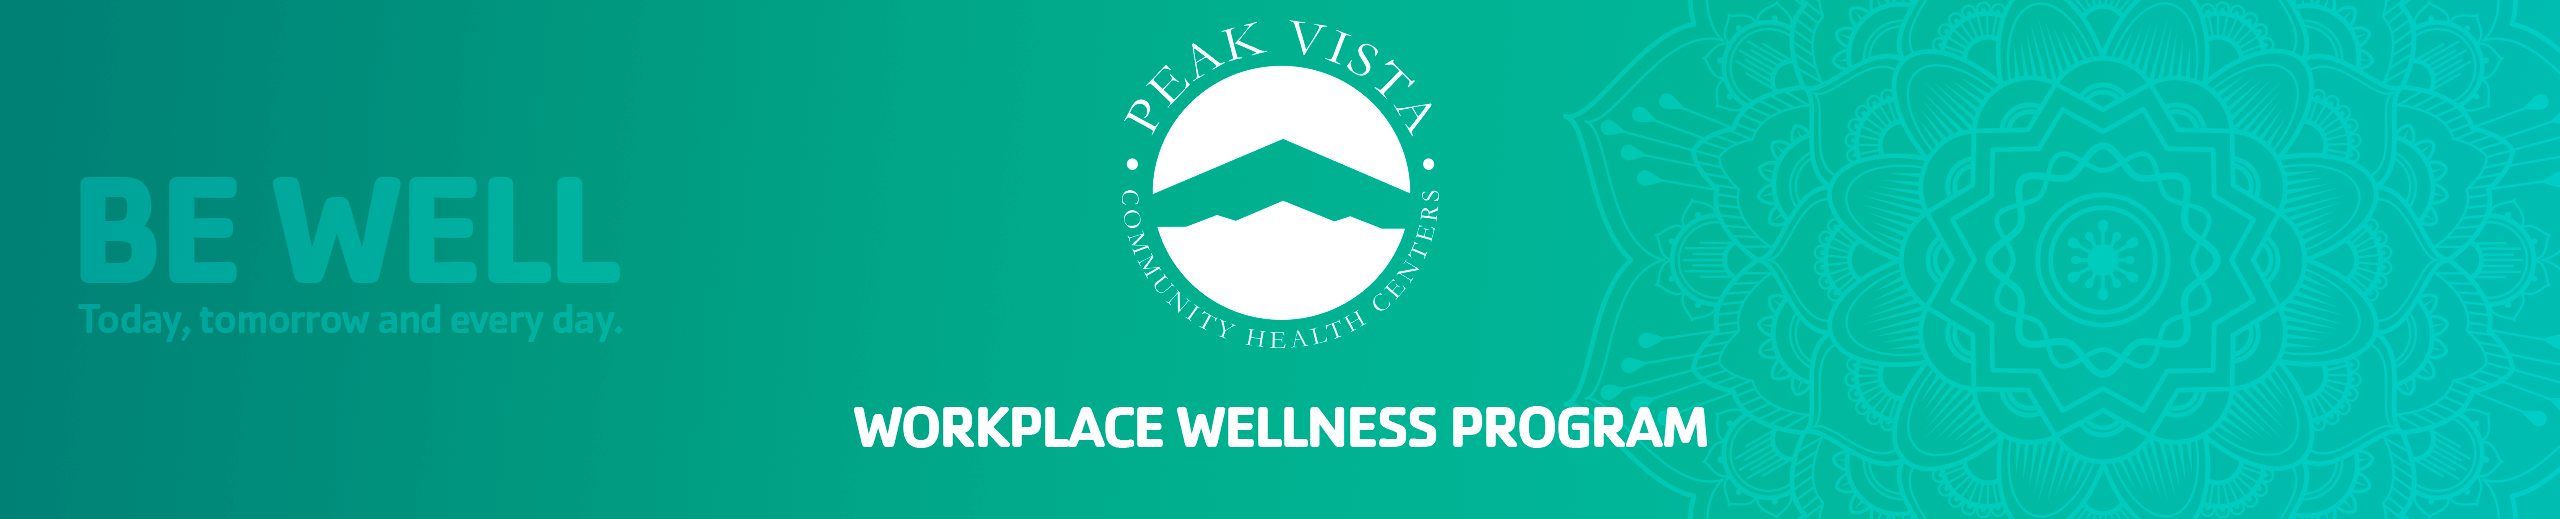 YMCA Peak Vista